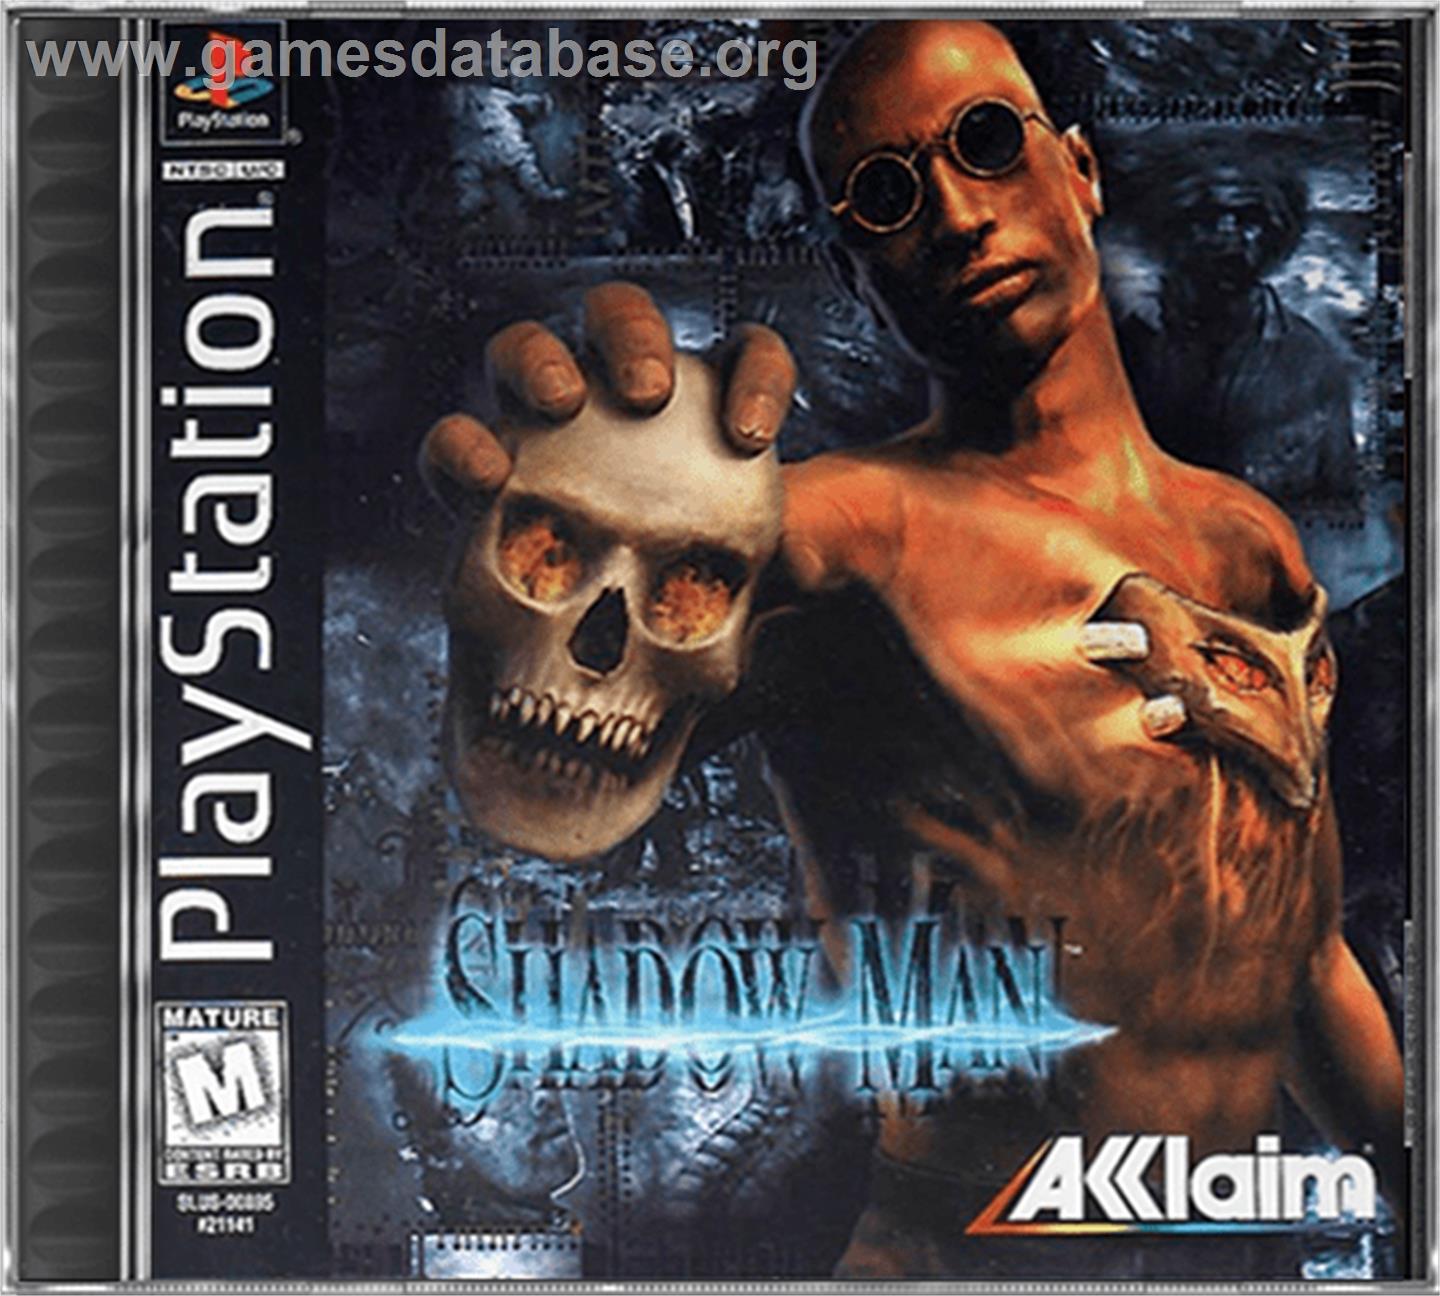 Shadow Man - Sony Playstation - Artwork - Box